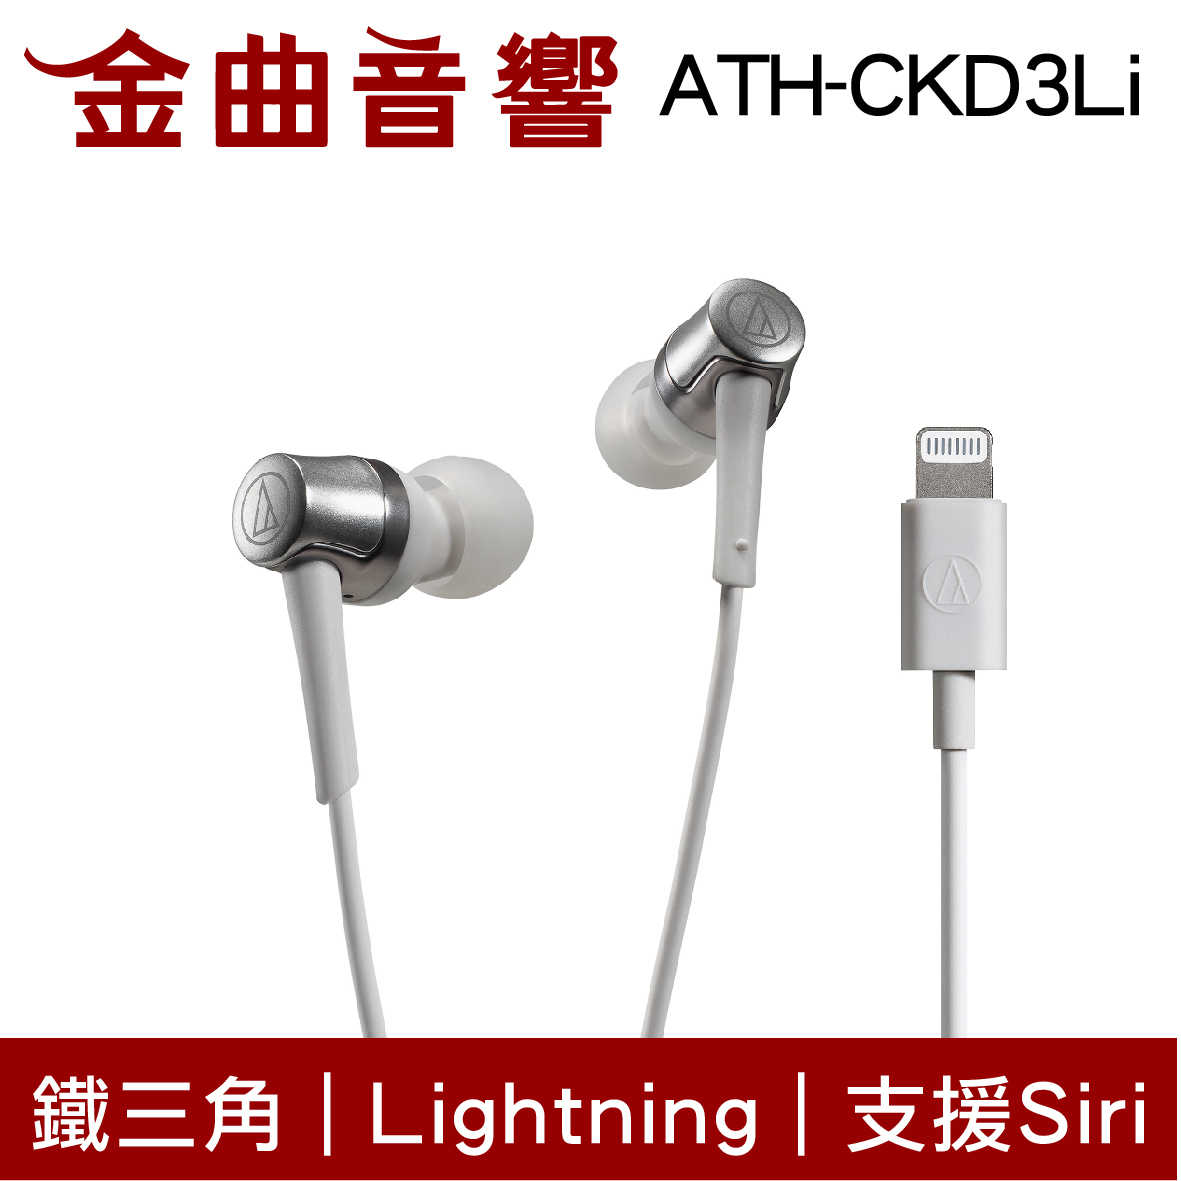 鐵三角 ATH-CKD3Li 白 Lightning 支援Siri 線控 耳塞式 耳機 | 金曲音響